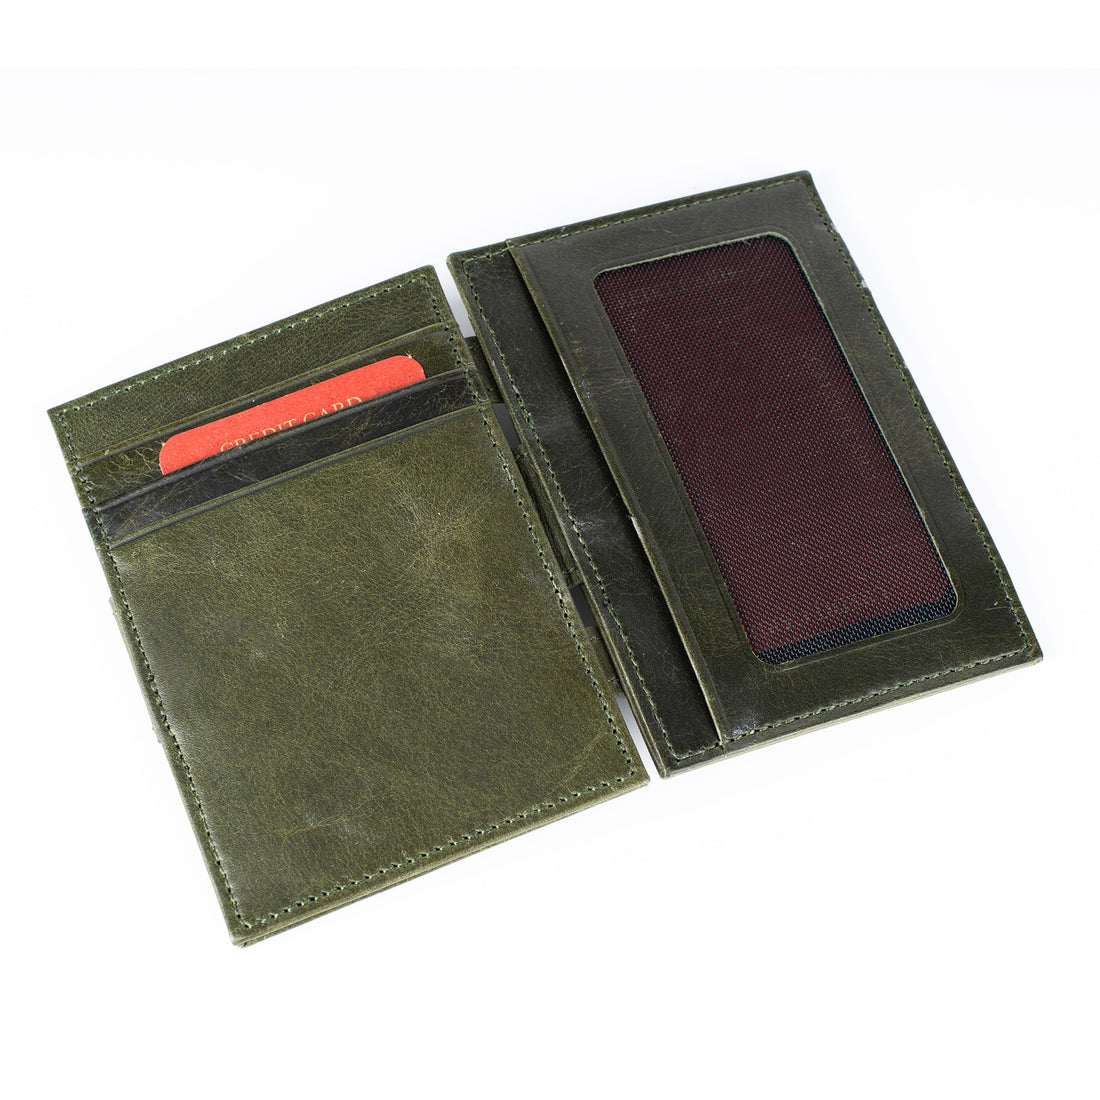 Laodicea Leather Bifold Wallet - Green - Wallets Zengoda Shop online from Artisan Brands